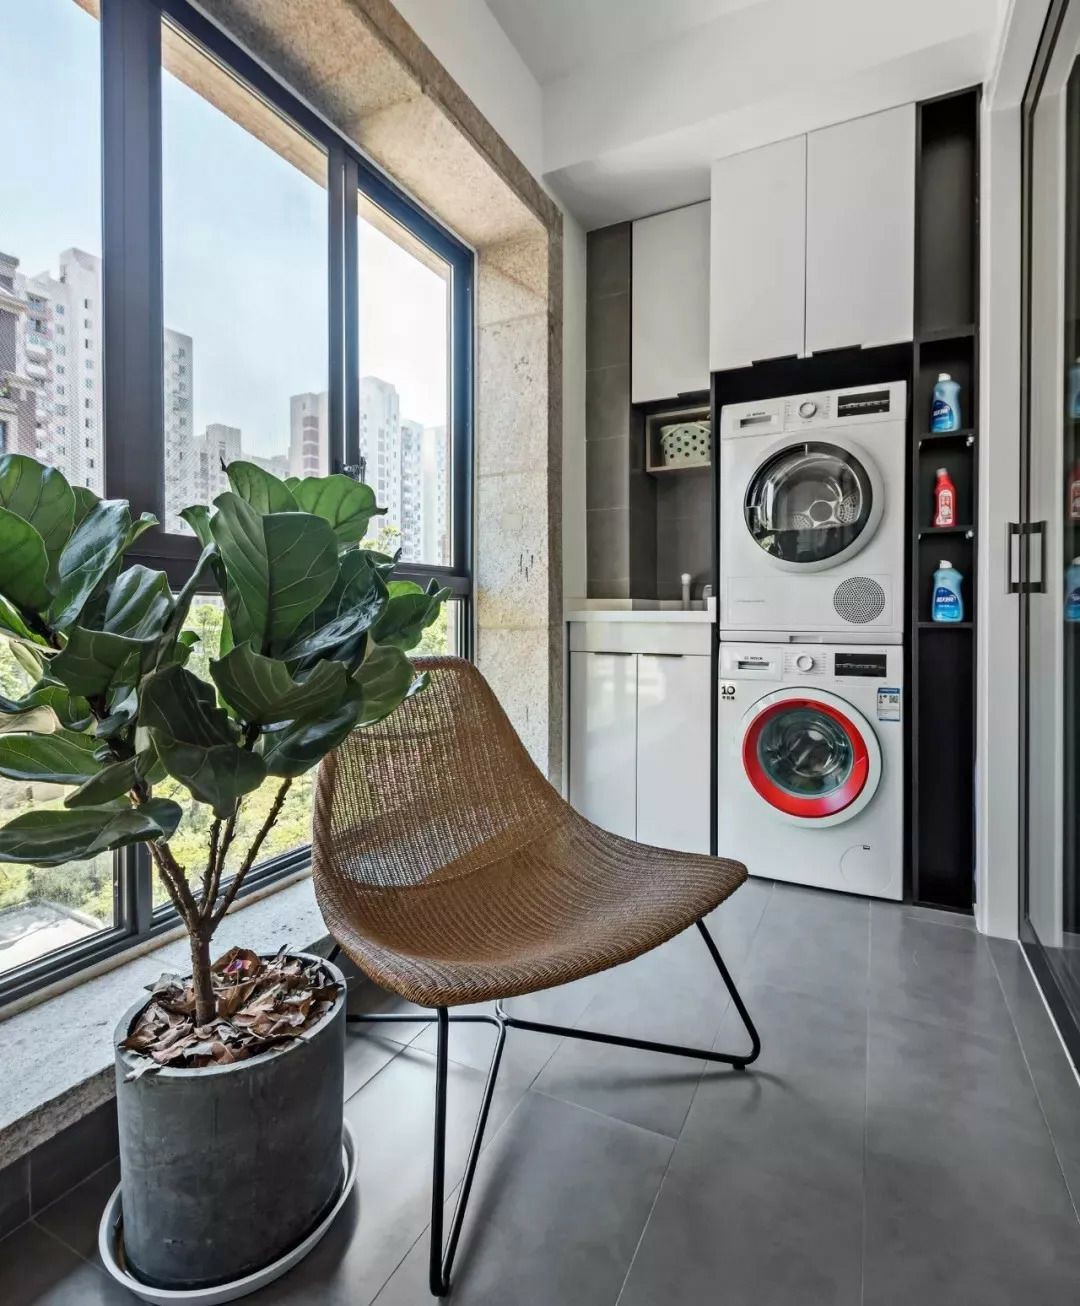 Tận dụng ban công làm nơi vừa thư giãn vừa để máy giặt, giải pháp siêu hay cho những người ở nhà chung cư - Ảnh 12.